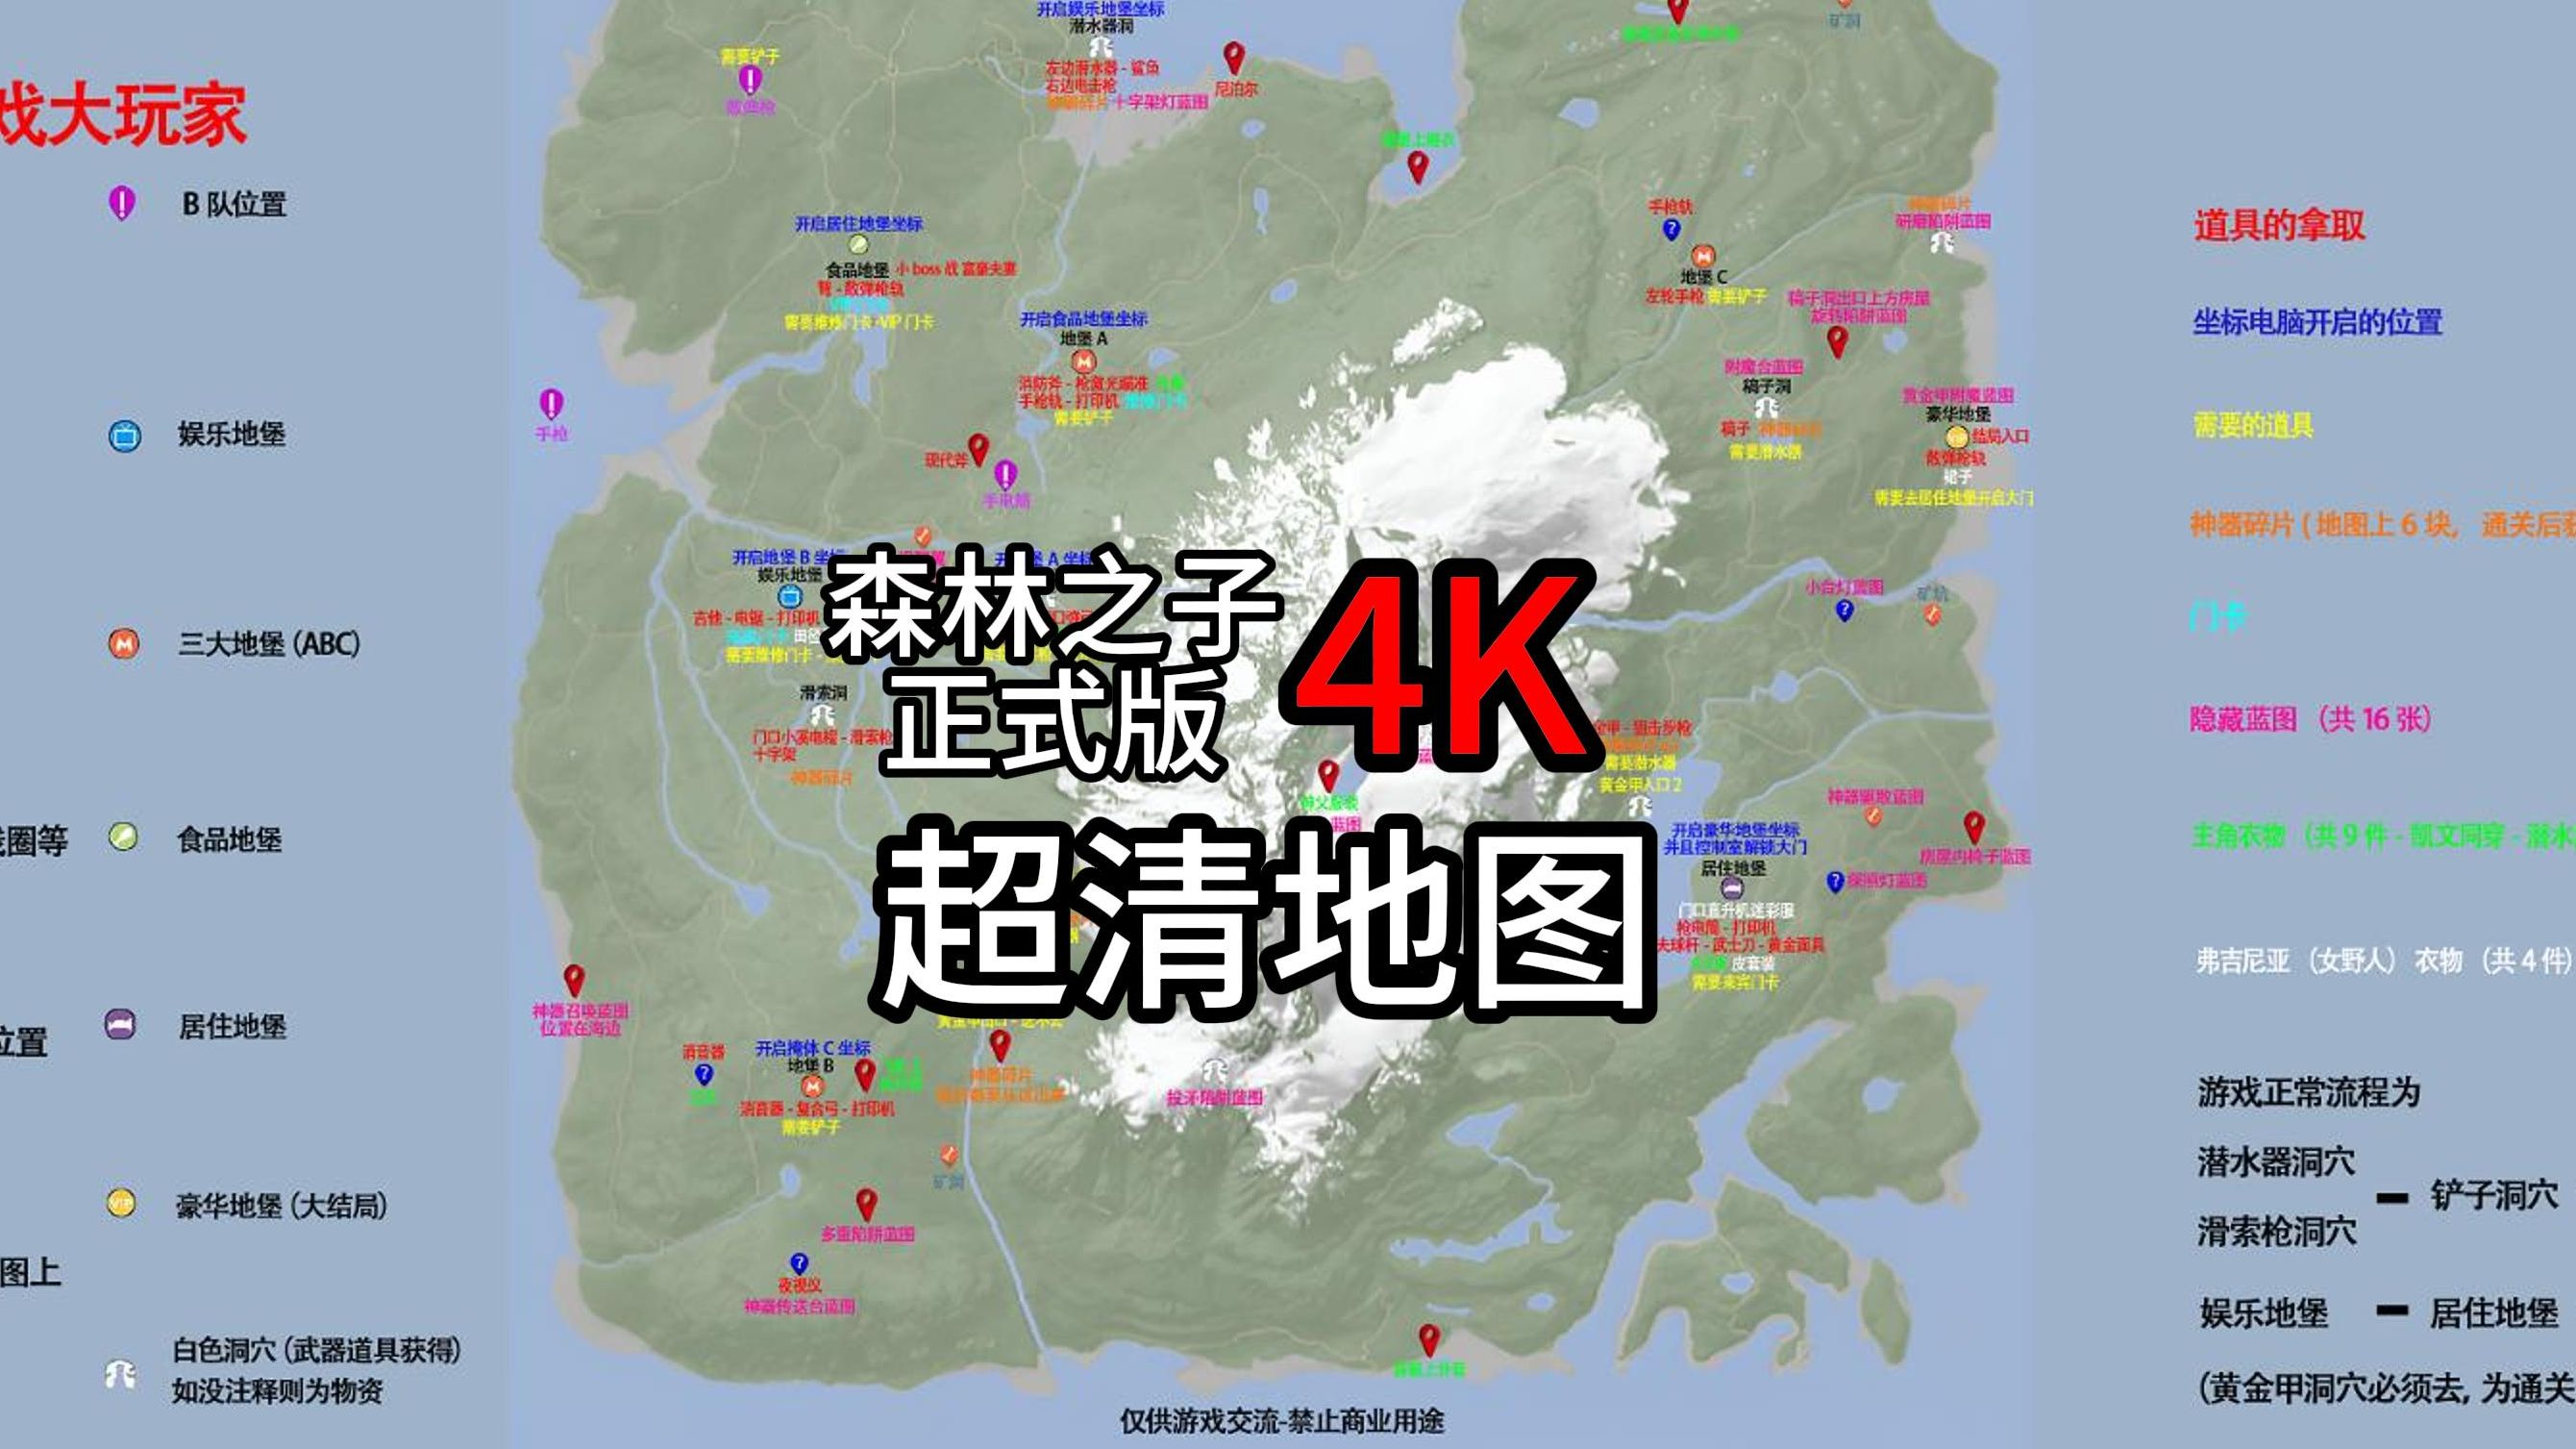 森林之子正式版4k超清地图(包含目前所有隐藏蓝图与衣物)